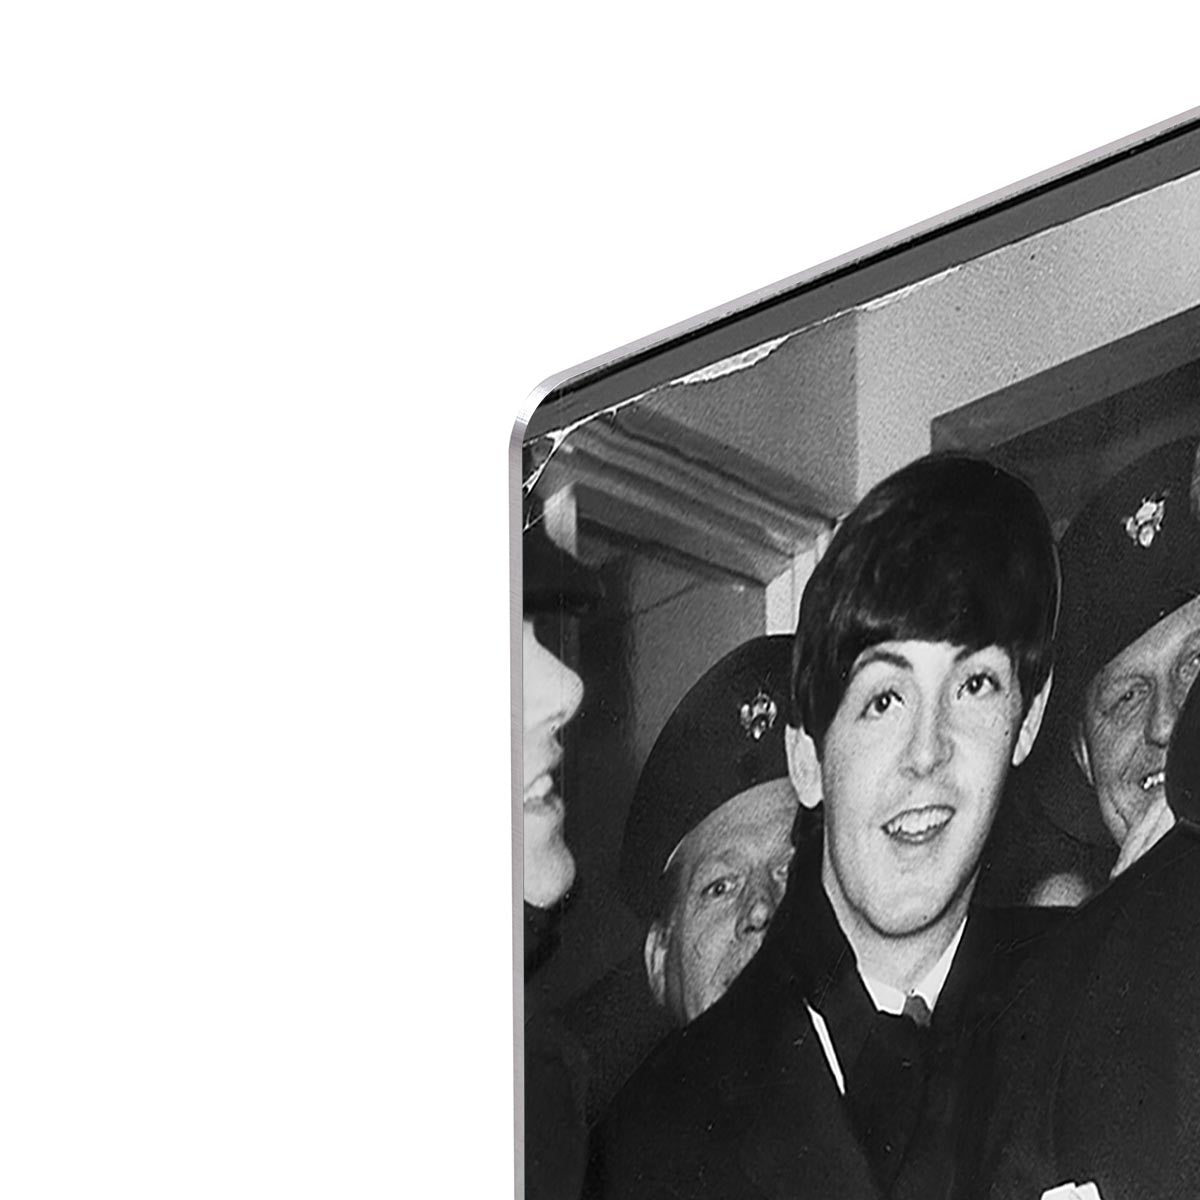 The Beatles arrive at London Airport HD Metal Print